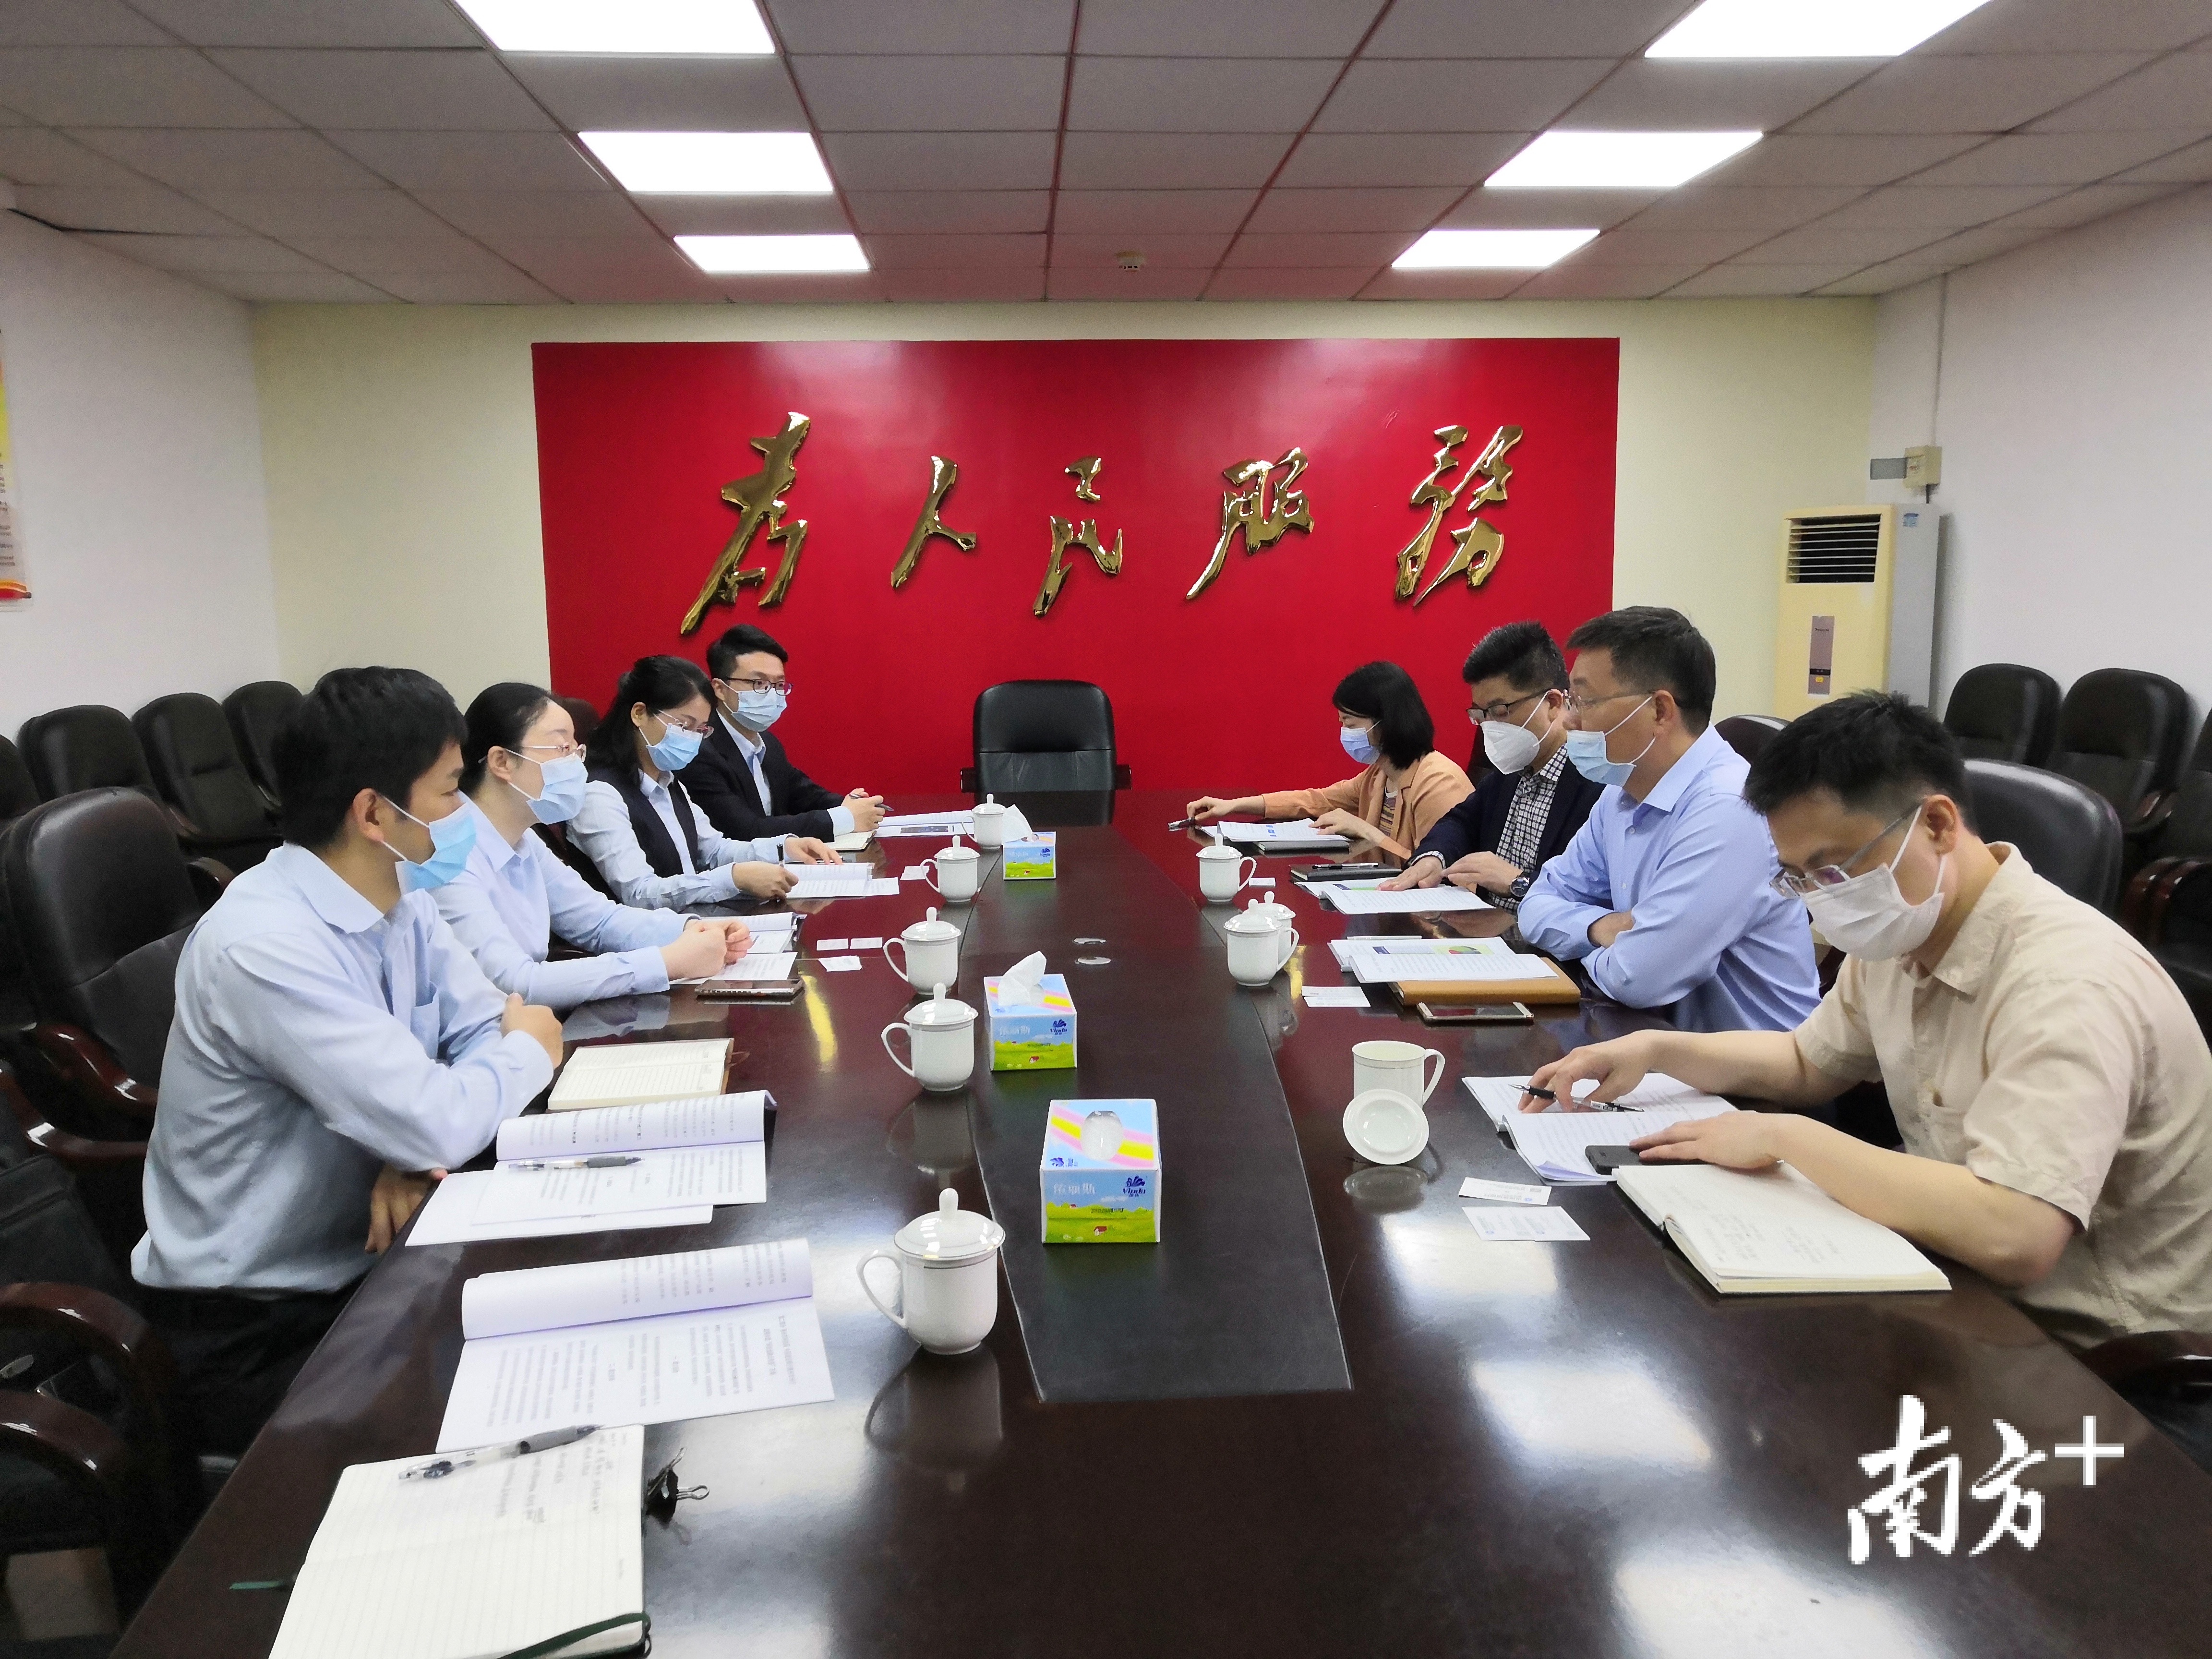 惠州建行走访惠州市科学技术局洽谈共建事宜。